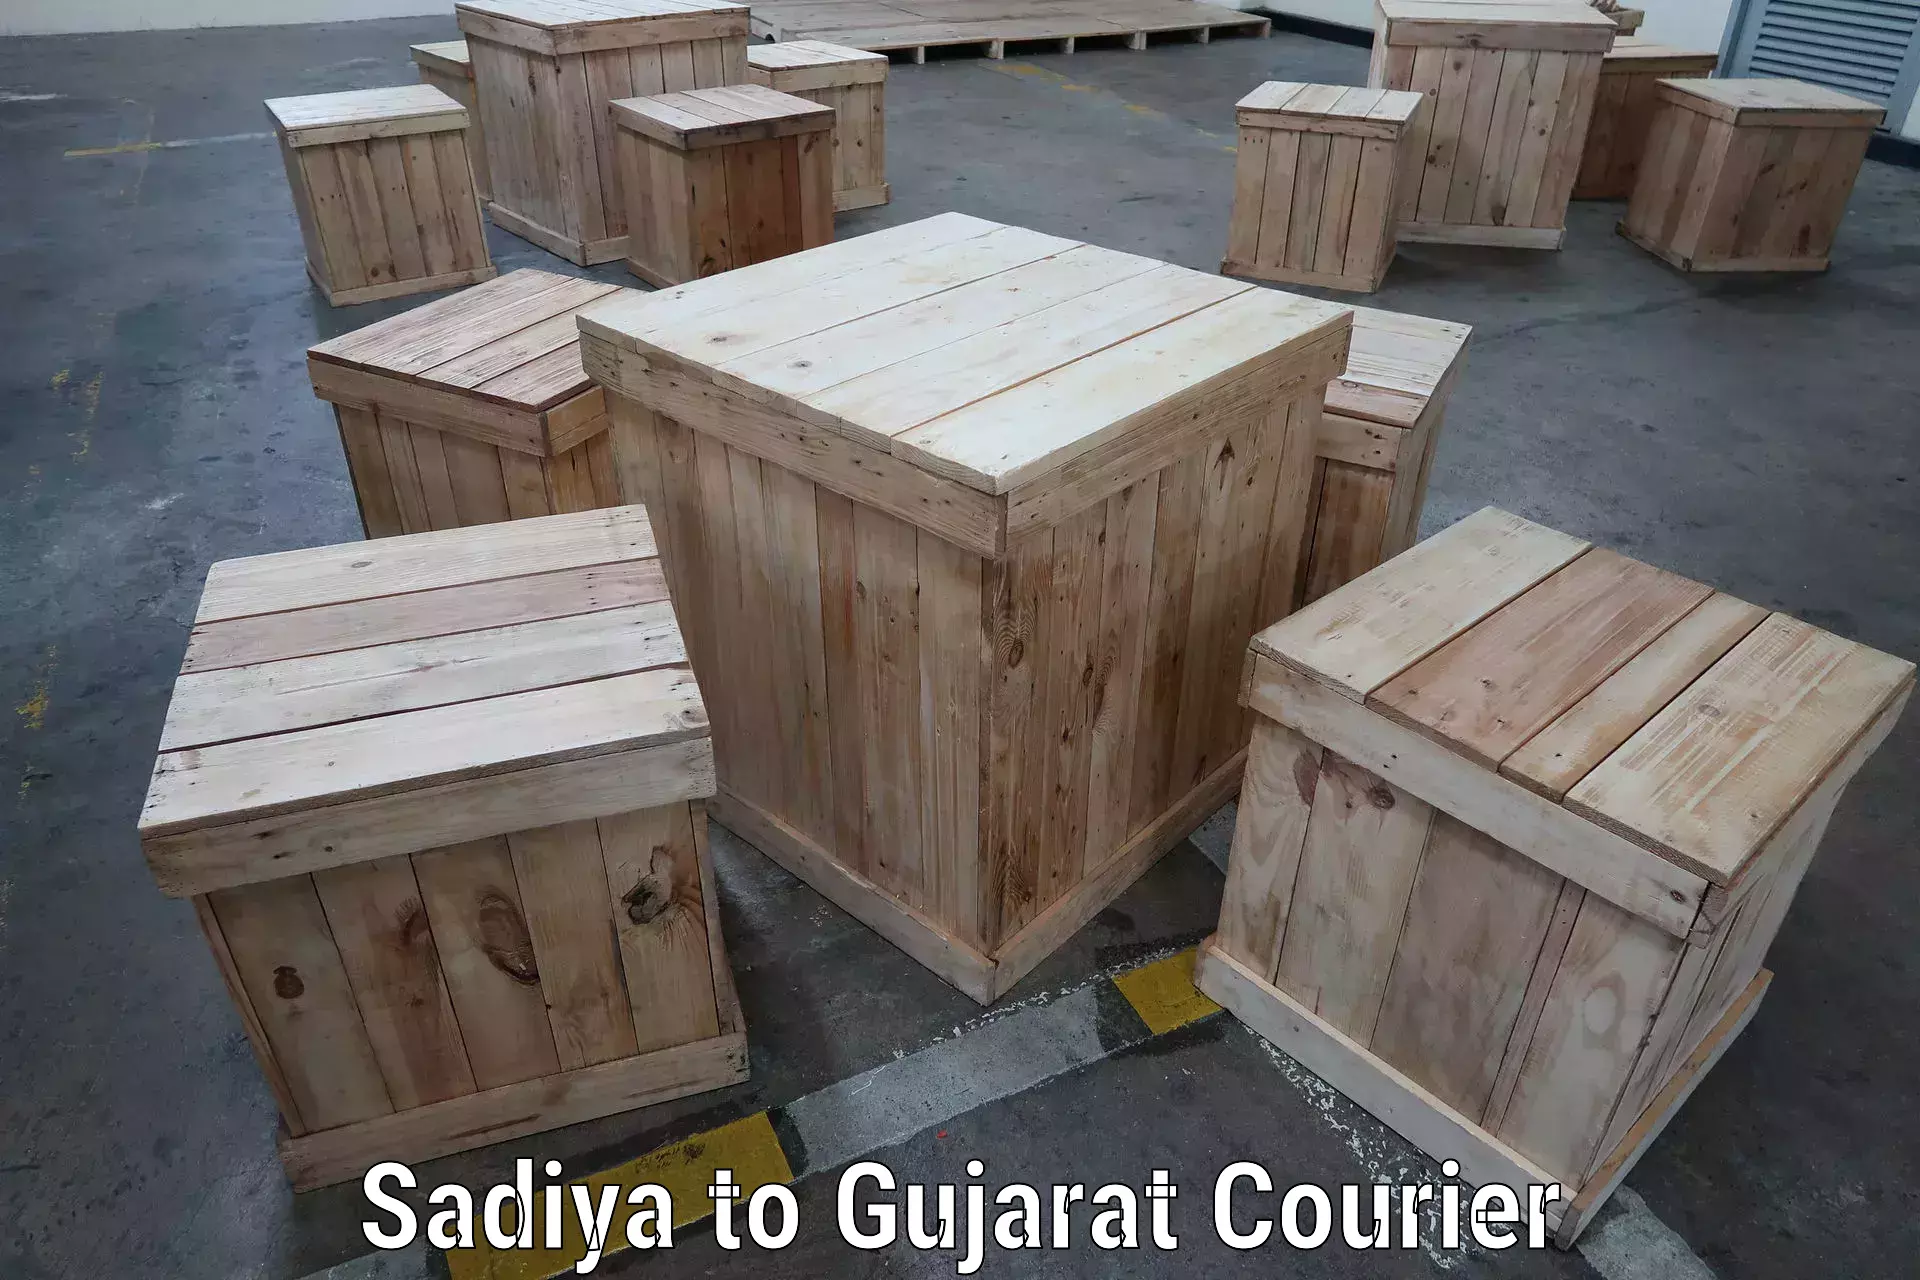 Customized shipping options Sadiya to Mandvi